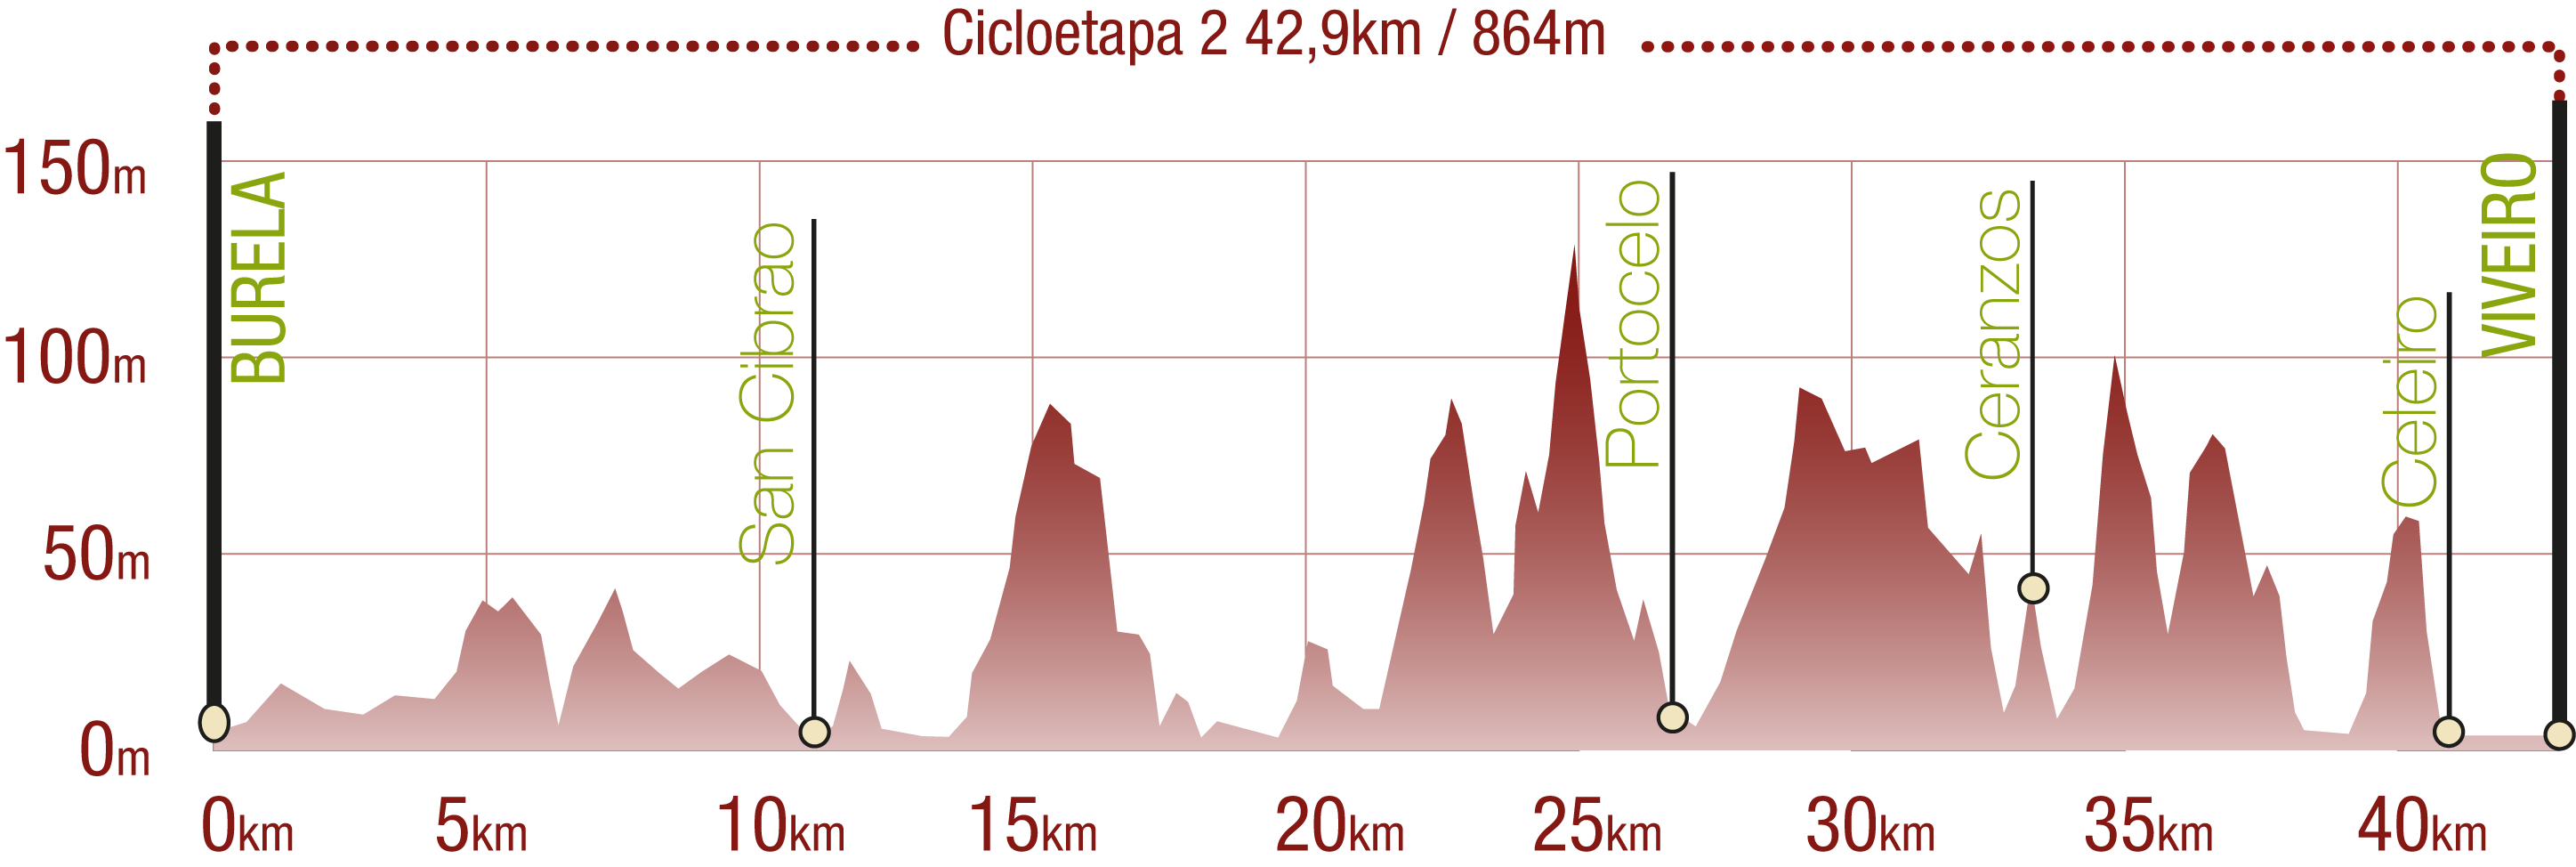 Perfil 
Perfil de la Cicloetapa 2 del CN Ruta del Cantábrico: 42,9 km / Desnivel de subida 864 m

